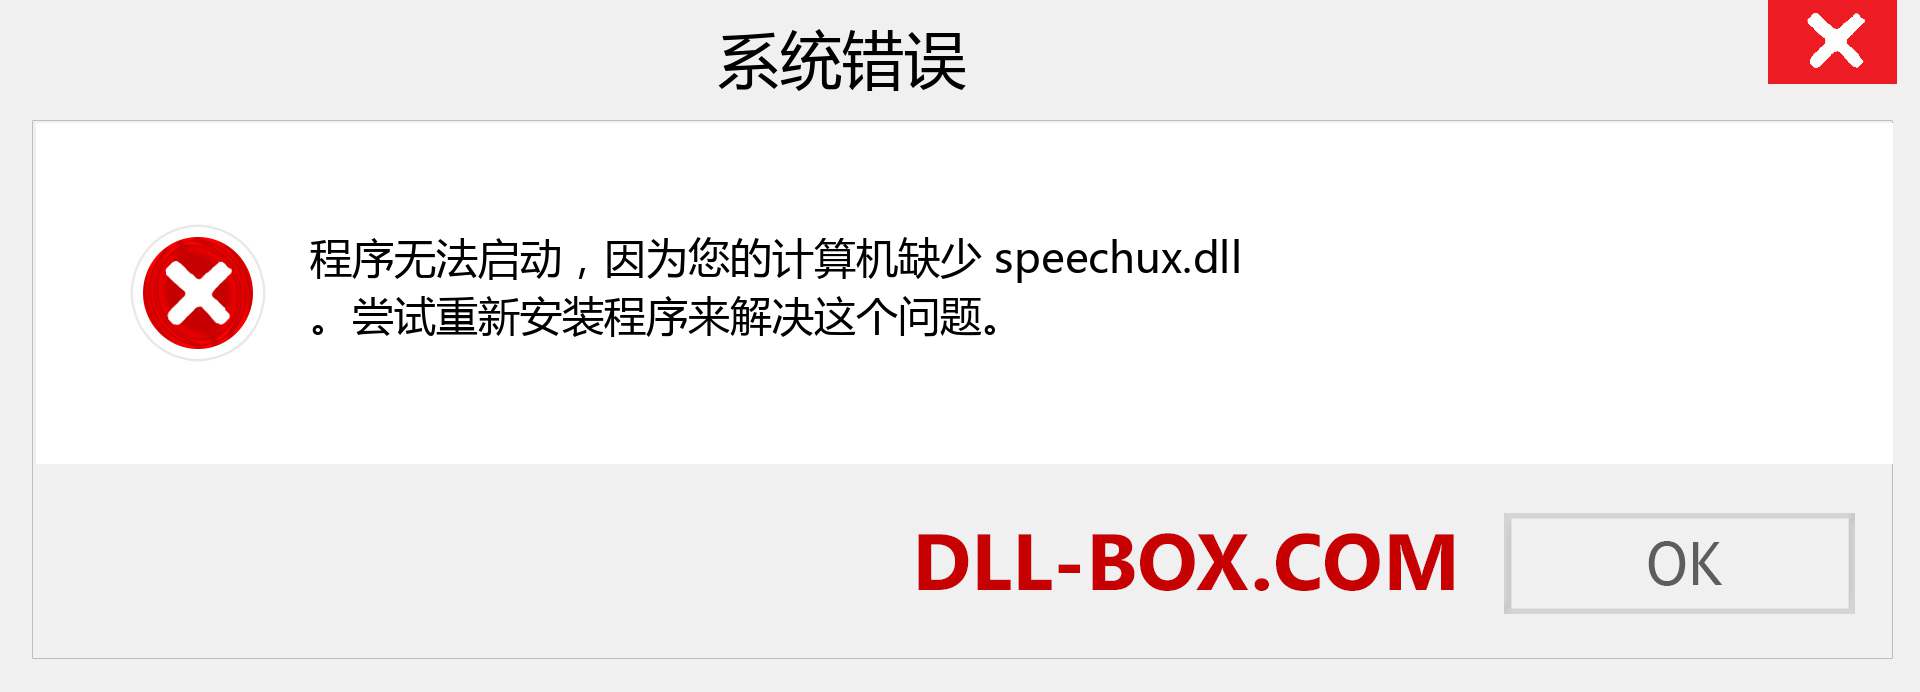 speechux.dll 文件丢失？。 适用于 Windows 7、8、10 的下载 - 修复 Windows、照片、图像上的 speechux dll 丢失错误